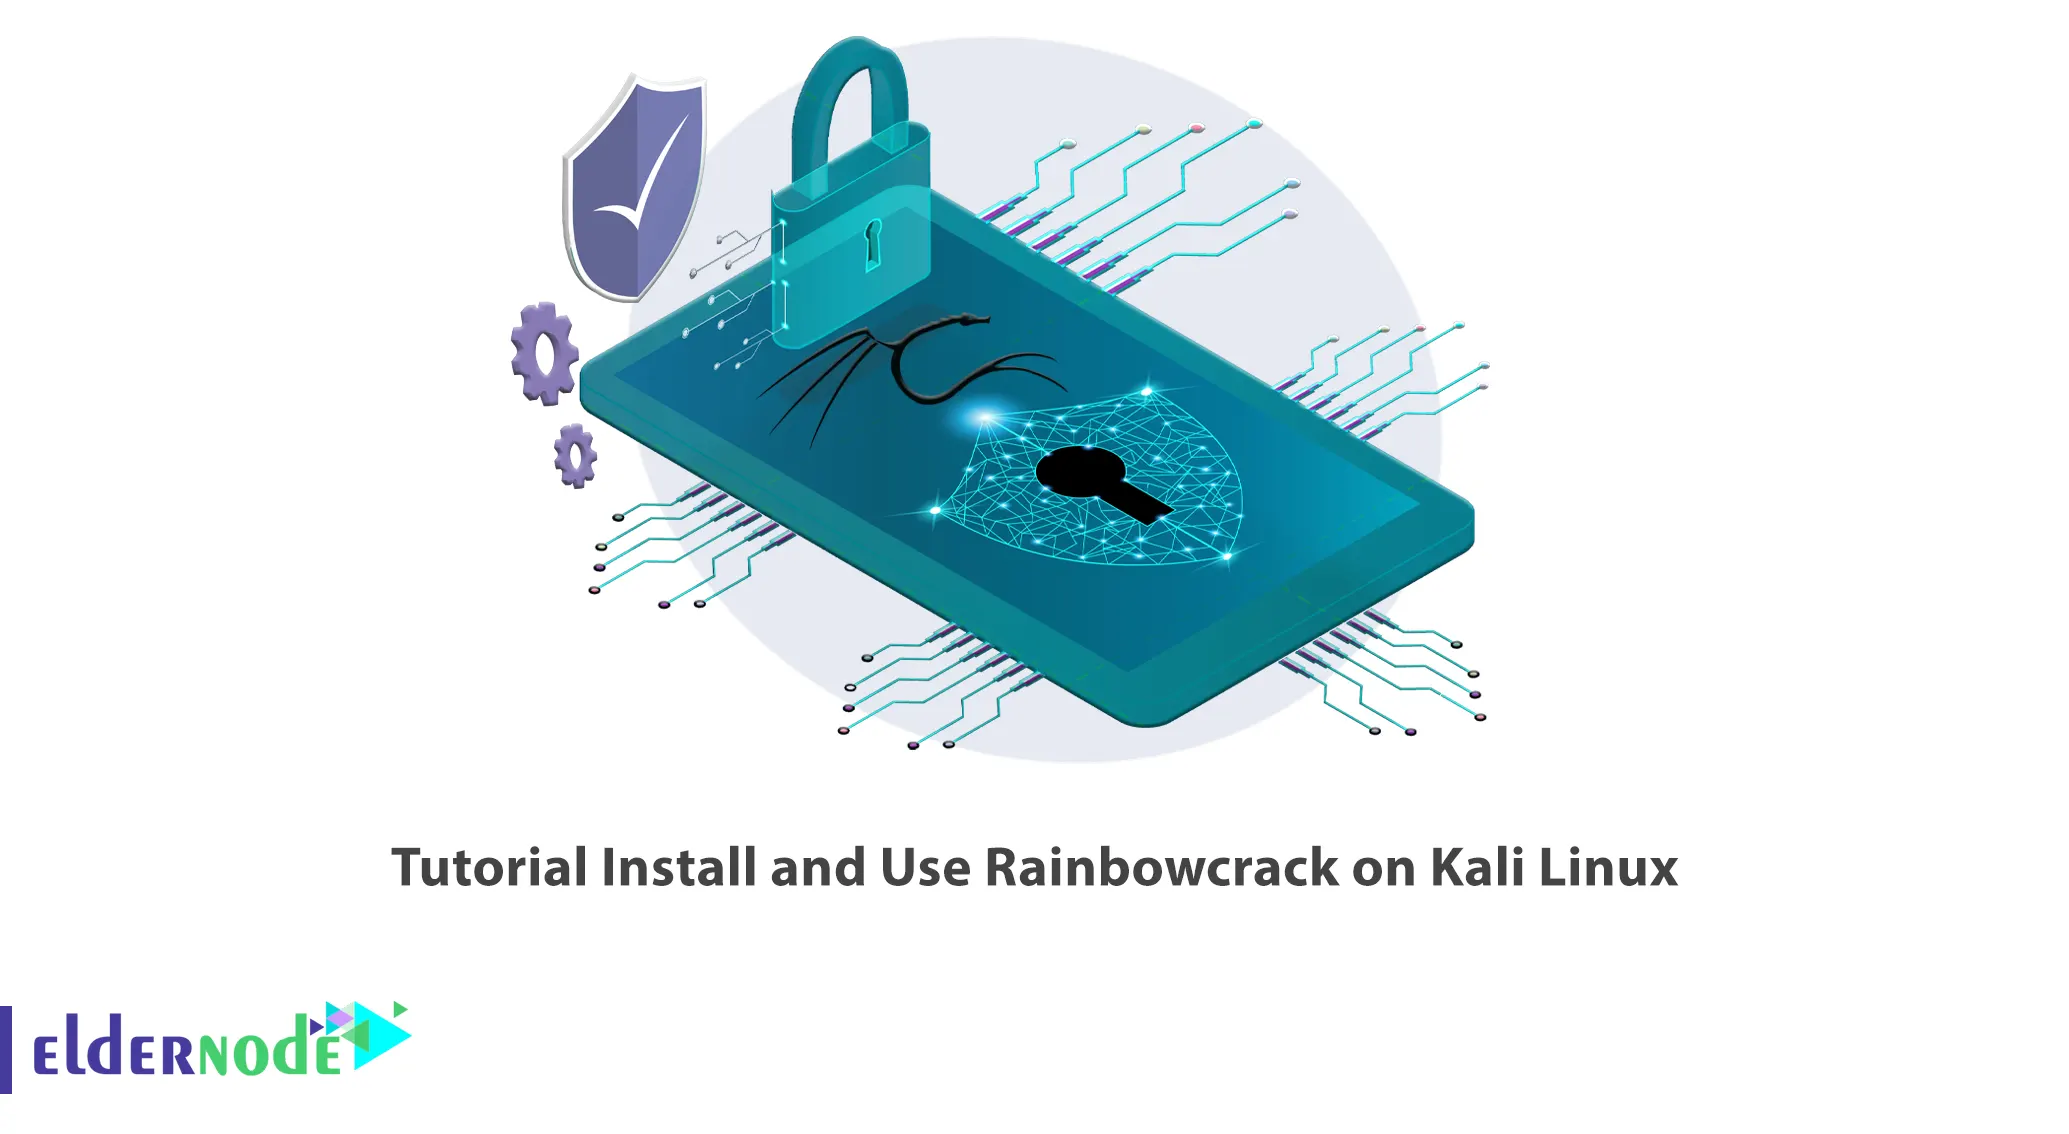 Tutorial Install and Use Rainbowcrack on Kali Linux